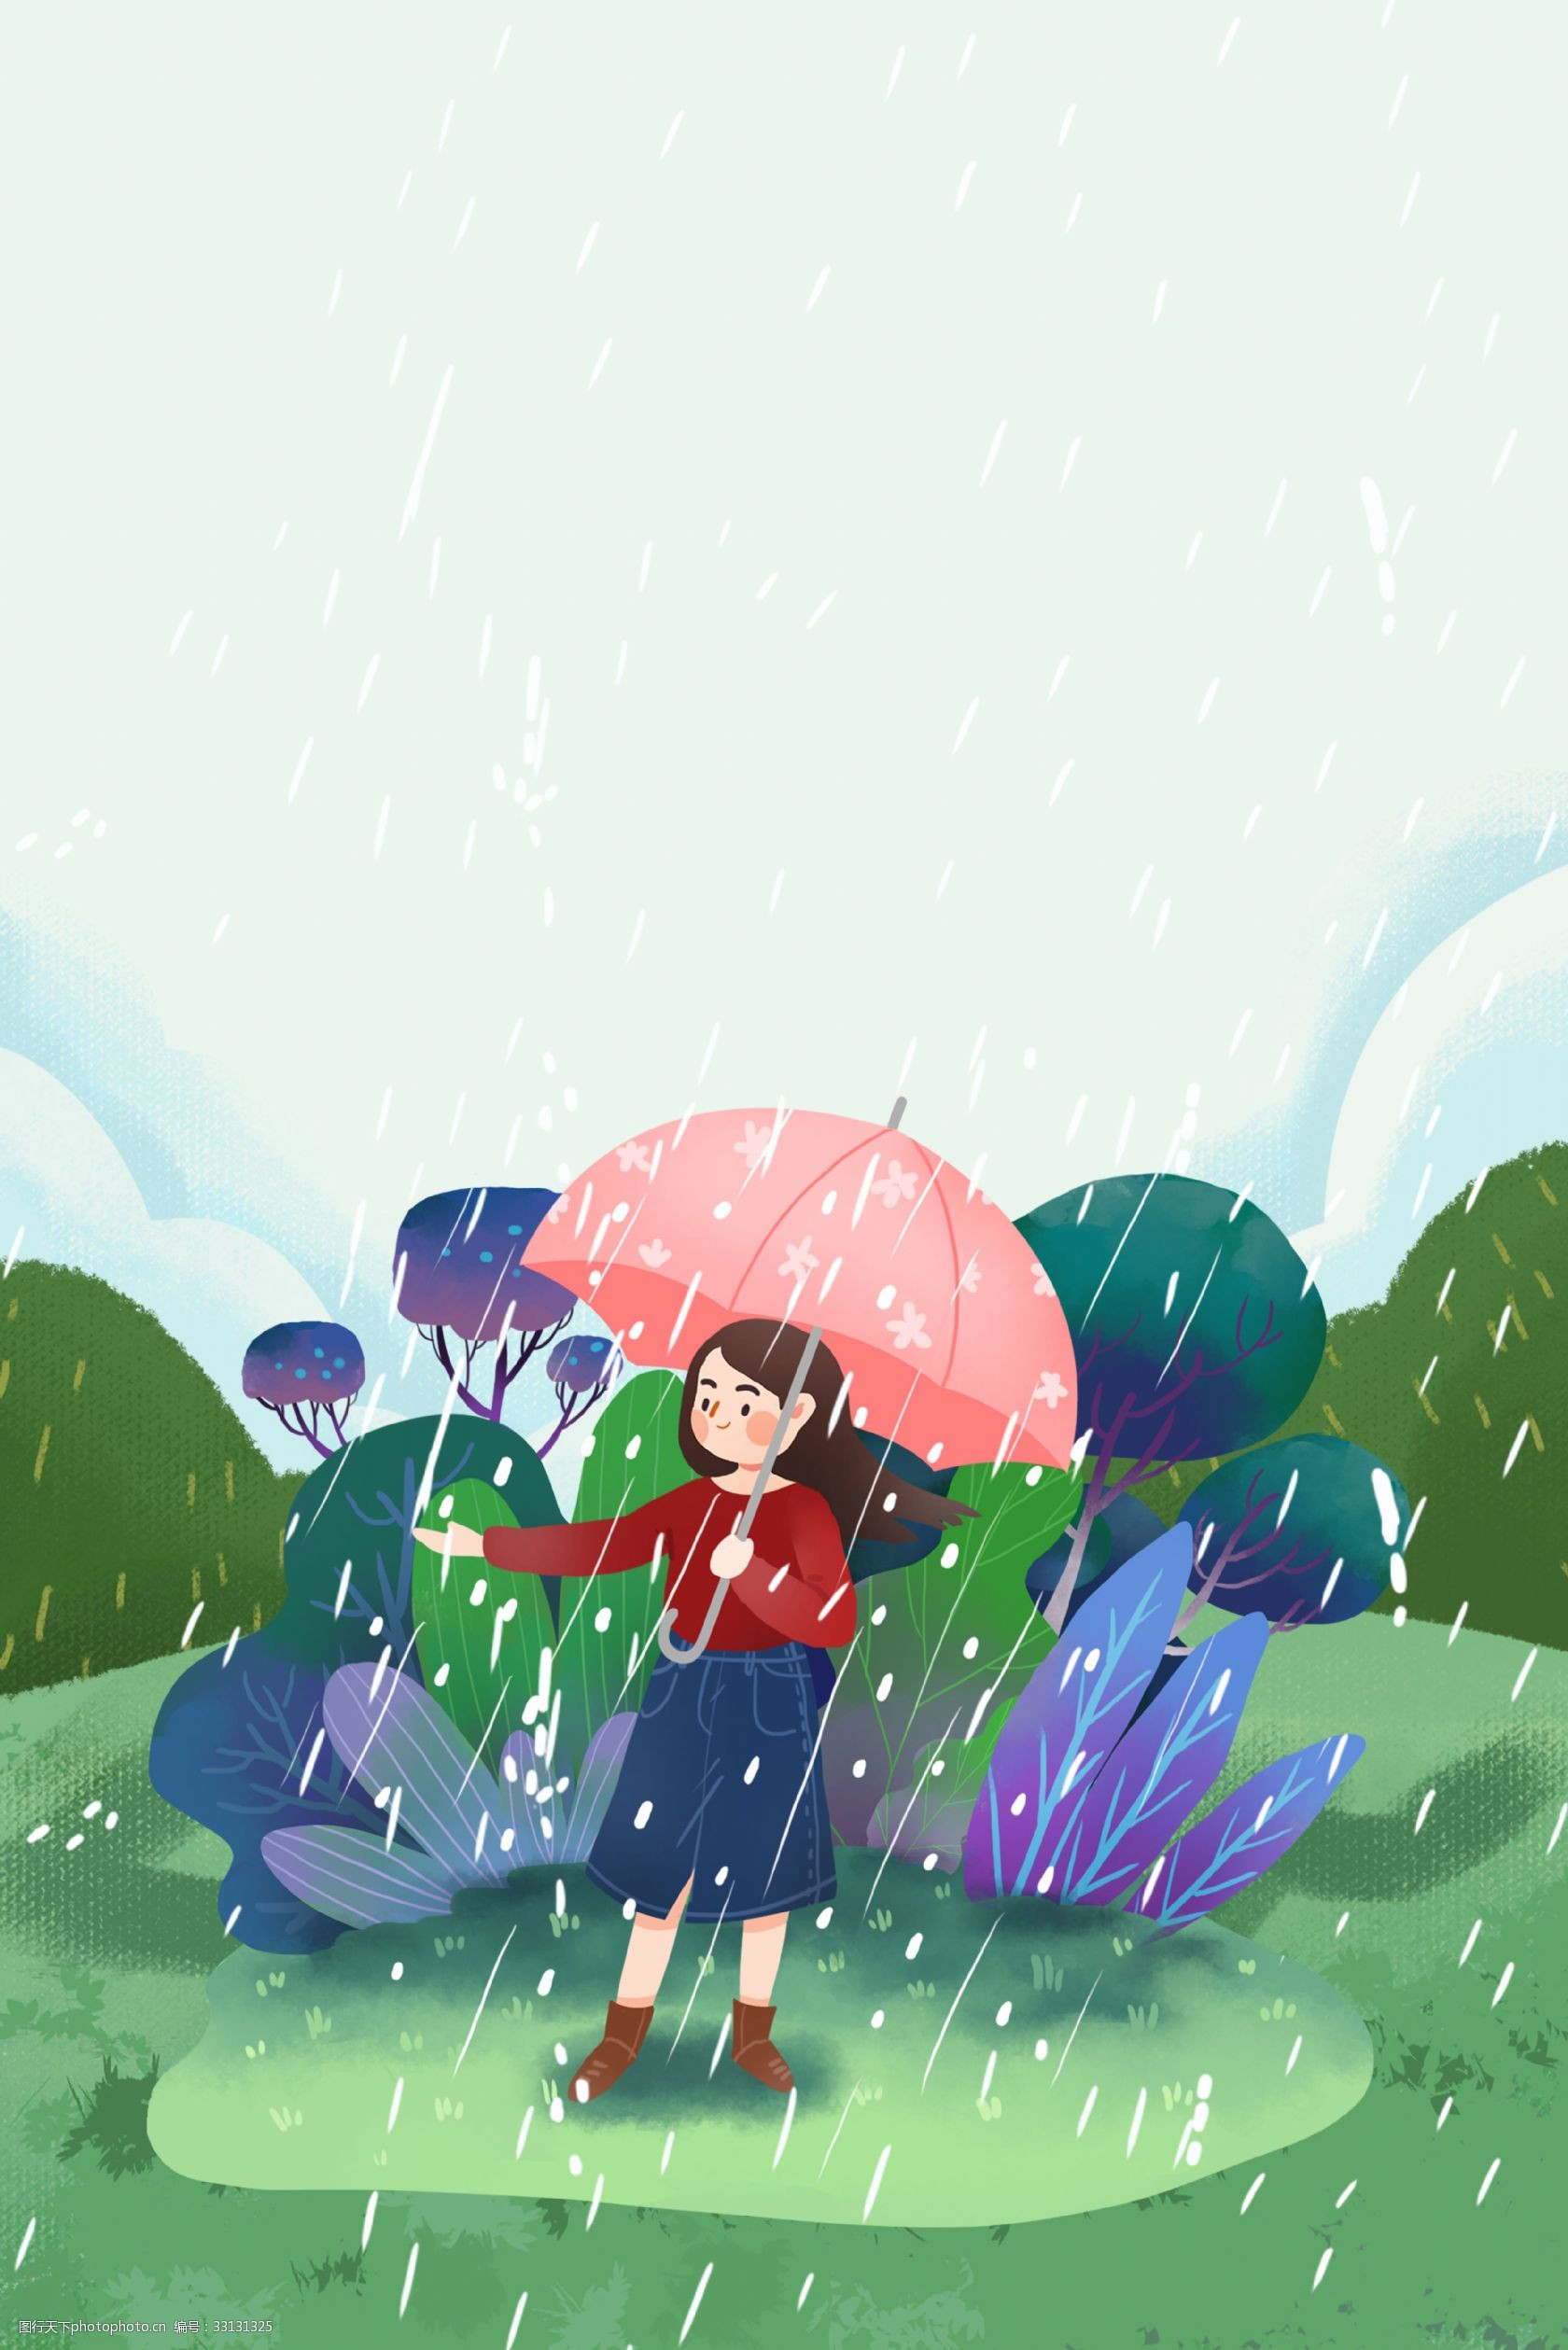 关键词:清明时节下雨背景 清明 清明节 节气 谷雨 雨水 卡通风 春景